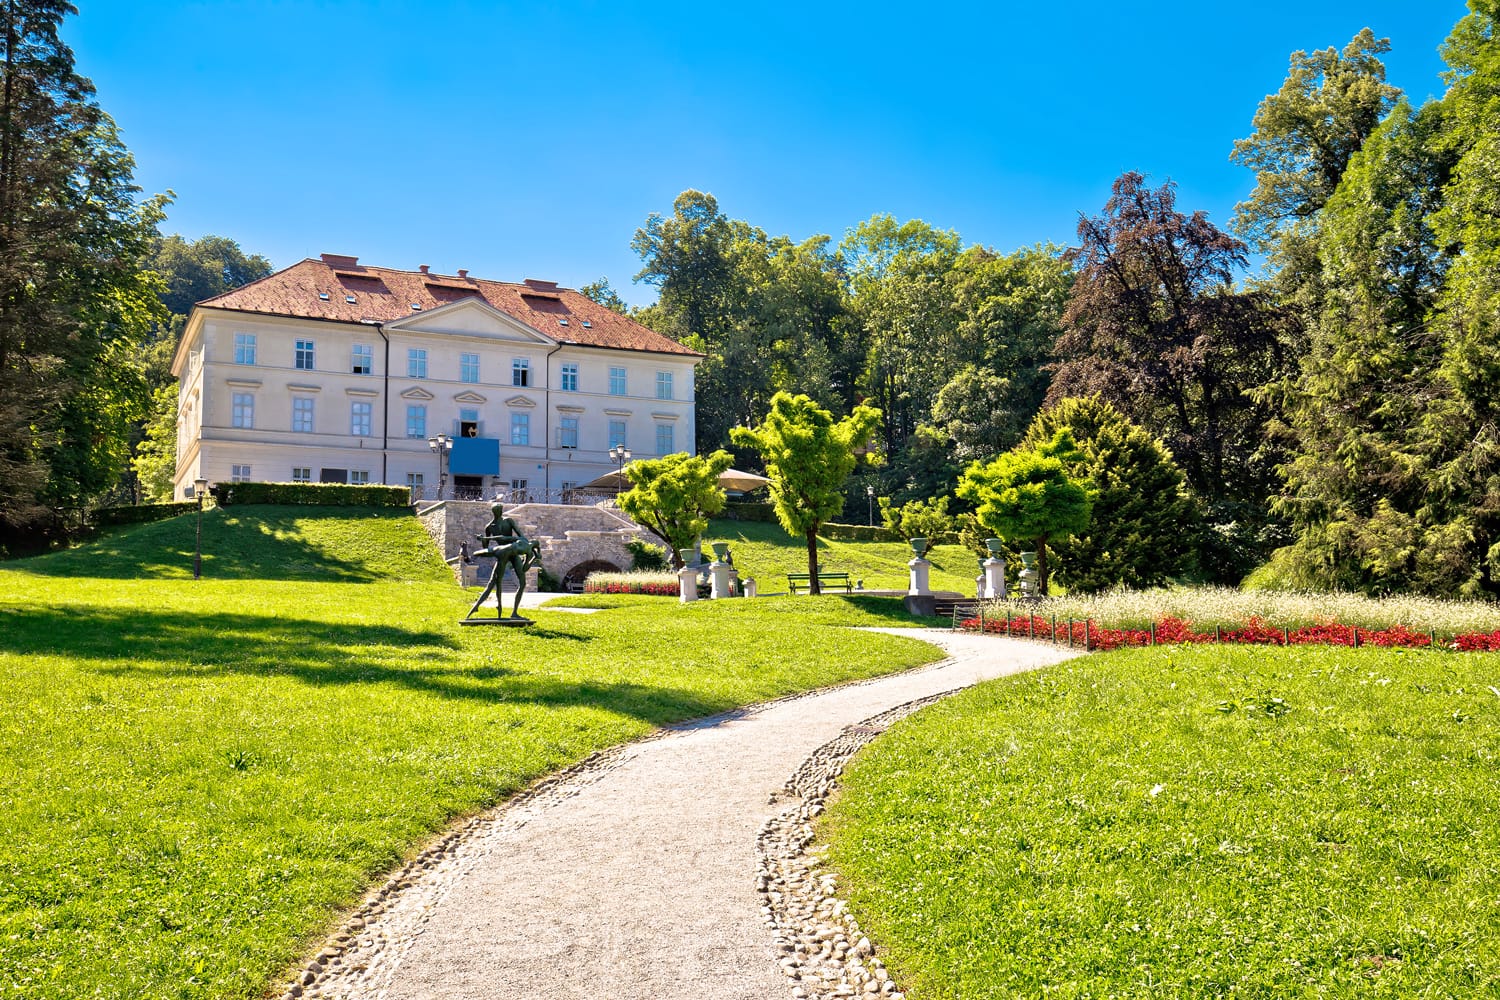 Τοπίο πάρκου Tivoli στη Λιουμπλιάνα, πράσινη καρδιά της πρωτεύουσας της Σλοβενίας